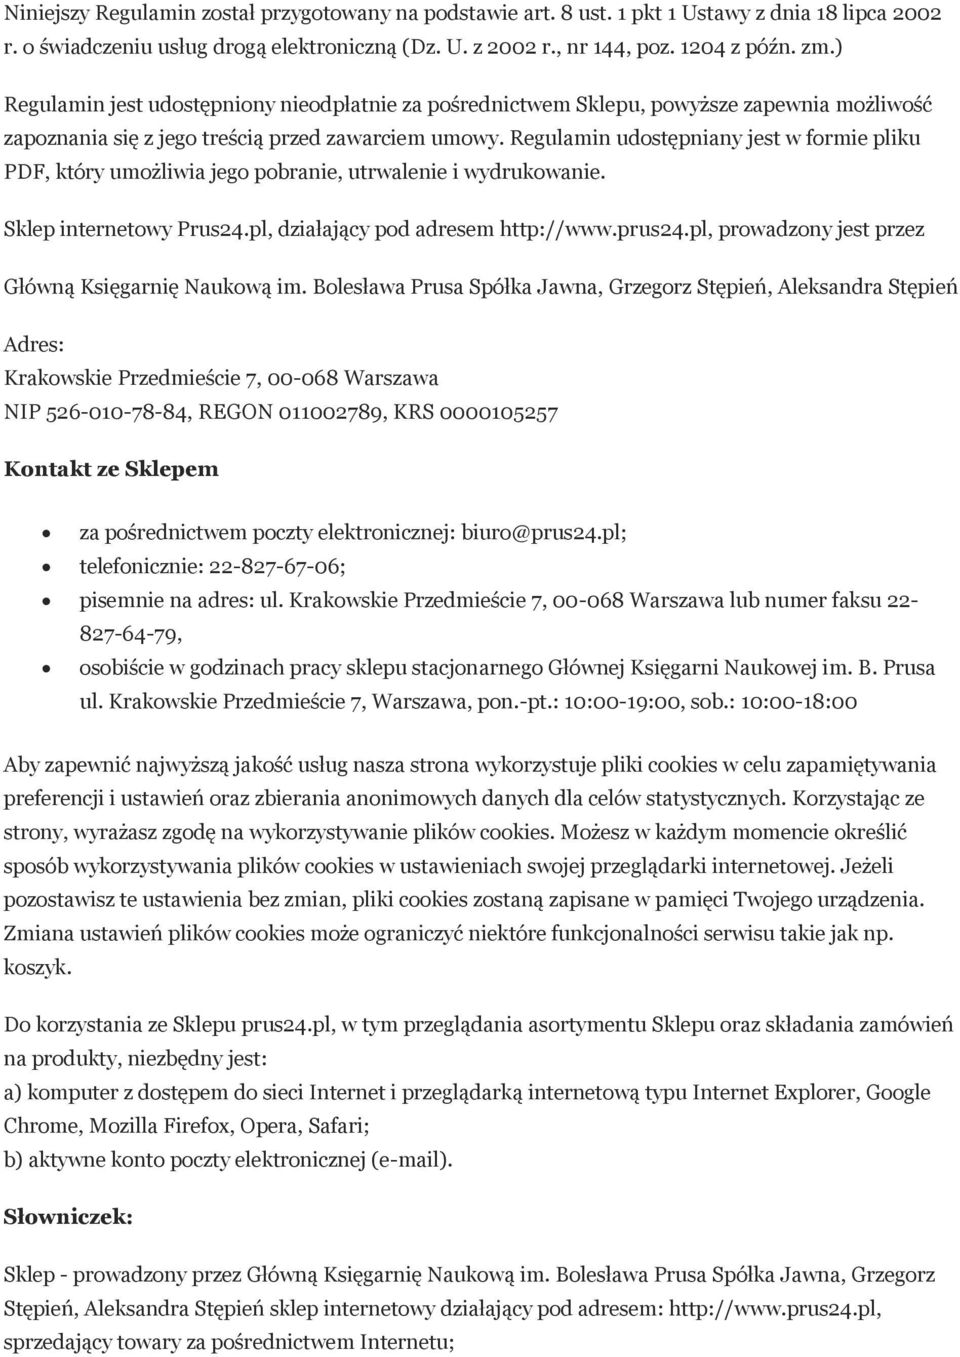 Regulamin udostępniany jest w formie pliku PDF, który umożliwia jego pobranie, utrwalenie i wydrukowanie. Sklep internetowy Prus24.pl, działający pod adresem http://www.prus24.